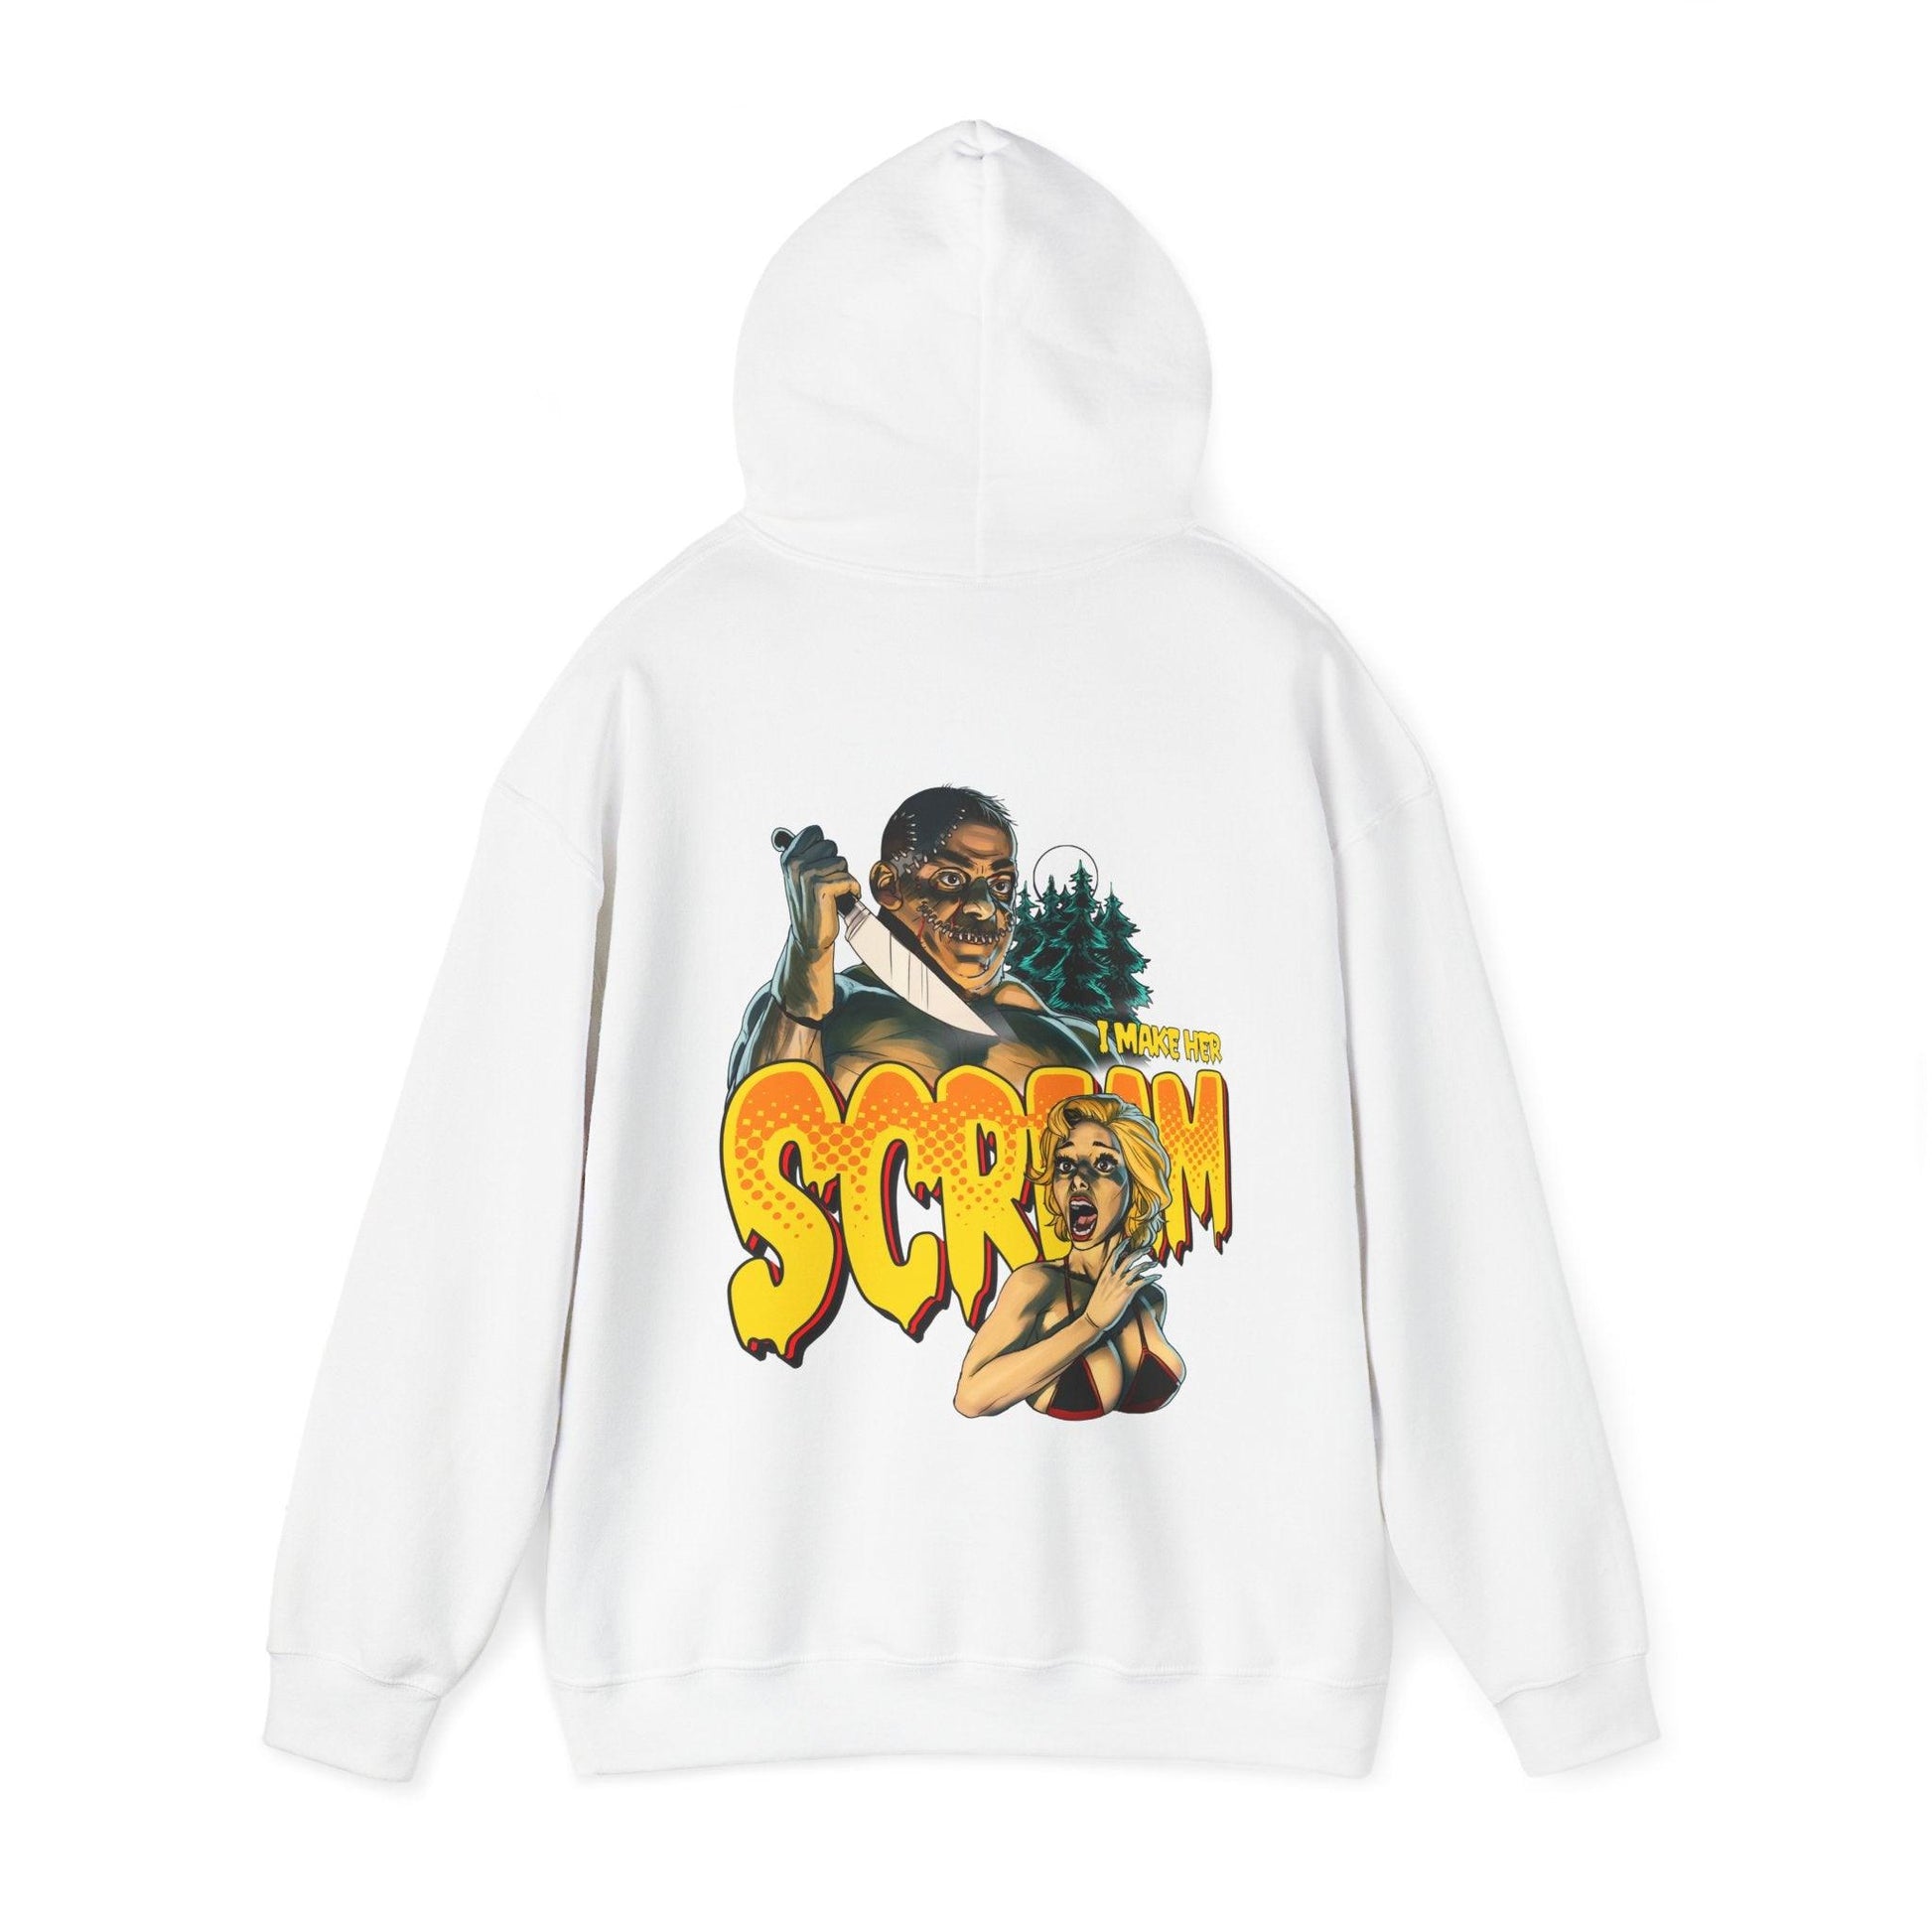 Scream - Unisex Heavy Blend Hooded Sweatshirt - Shaneinvasion